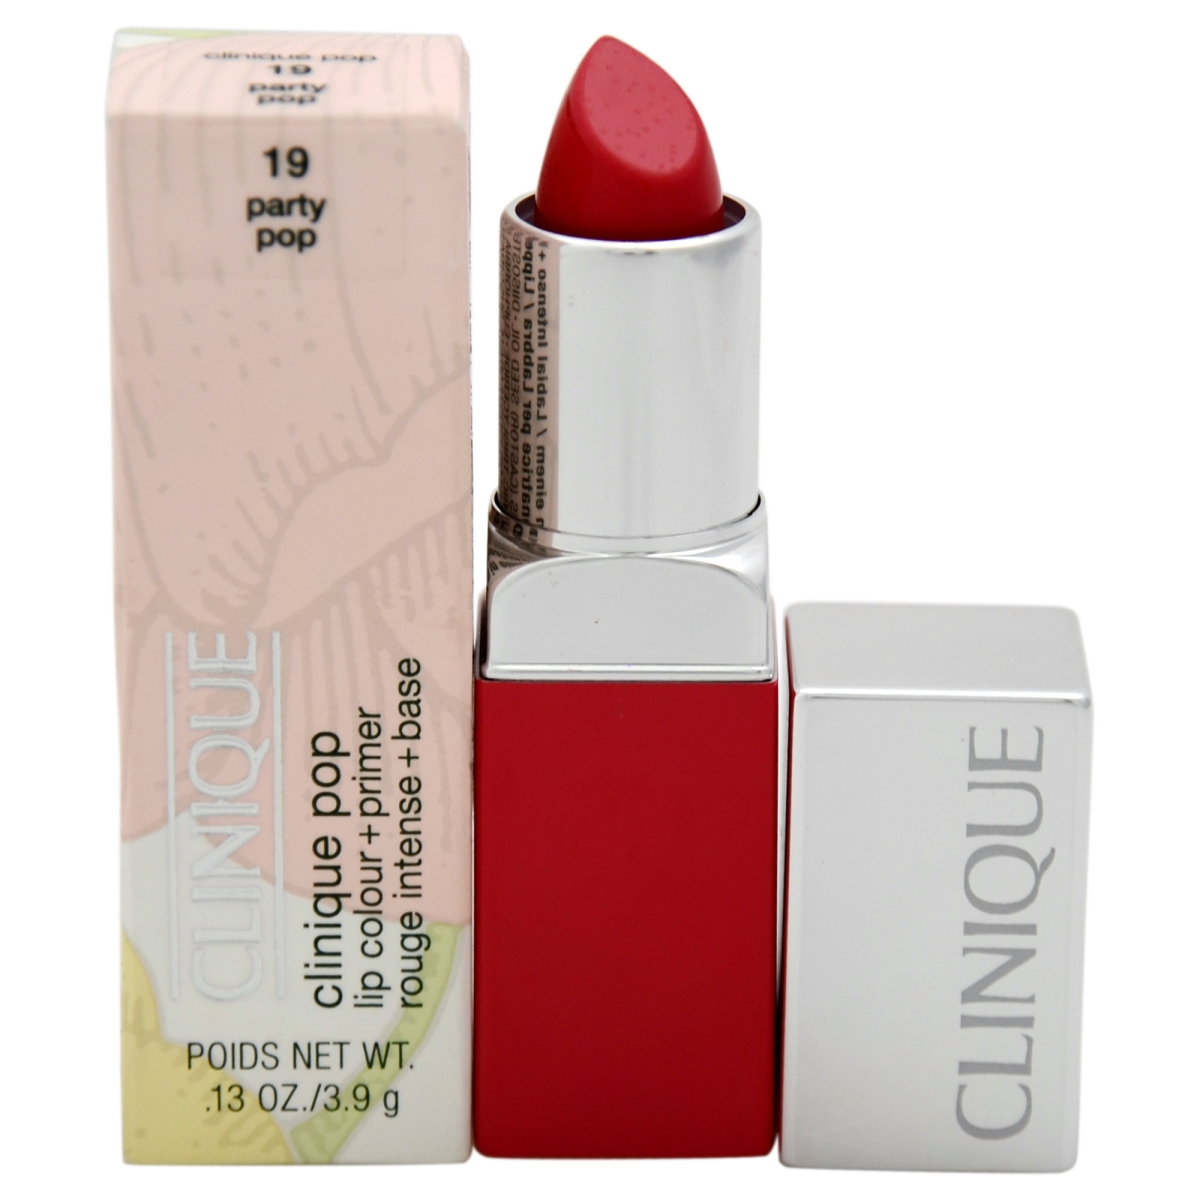 W-c-8533 0.13 Oz No. 19 Party Pop Plus Primer Lipstick For Women